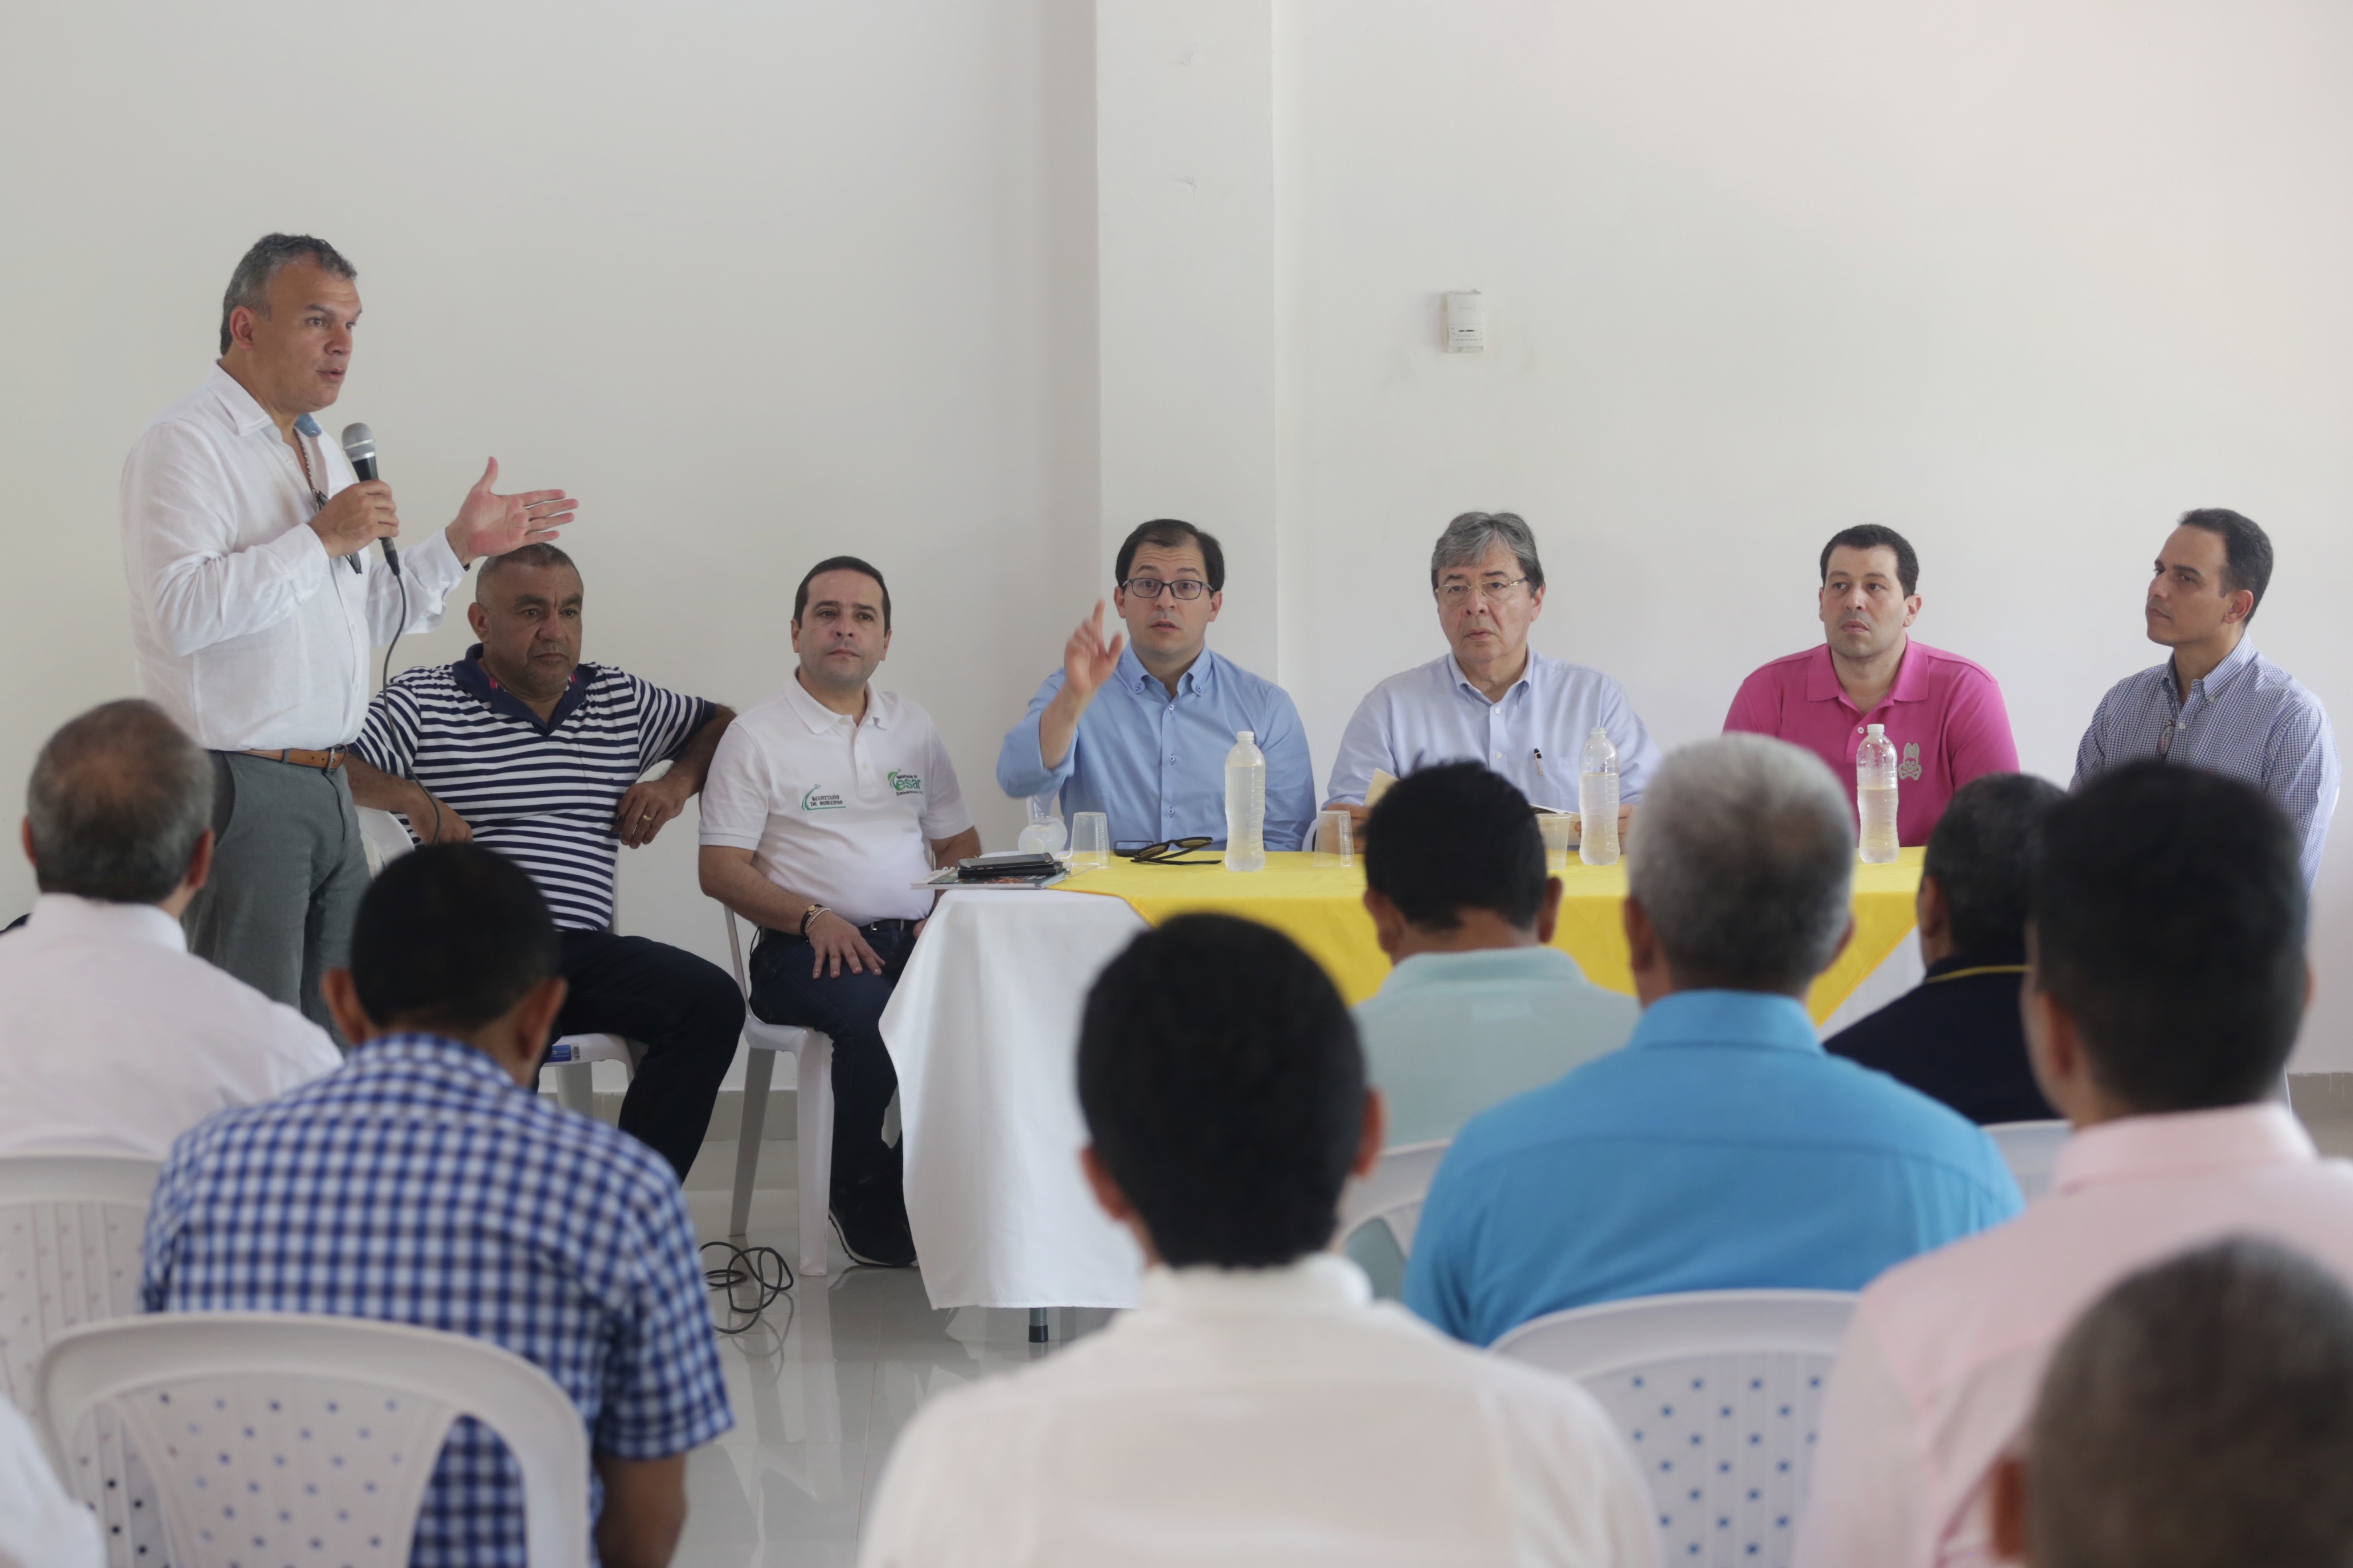 En La Paz, el Canciller se reunió con la comunidad para dialogar sobre impacto de migración venezolana en el municipio